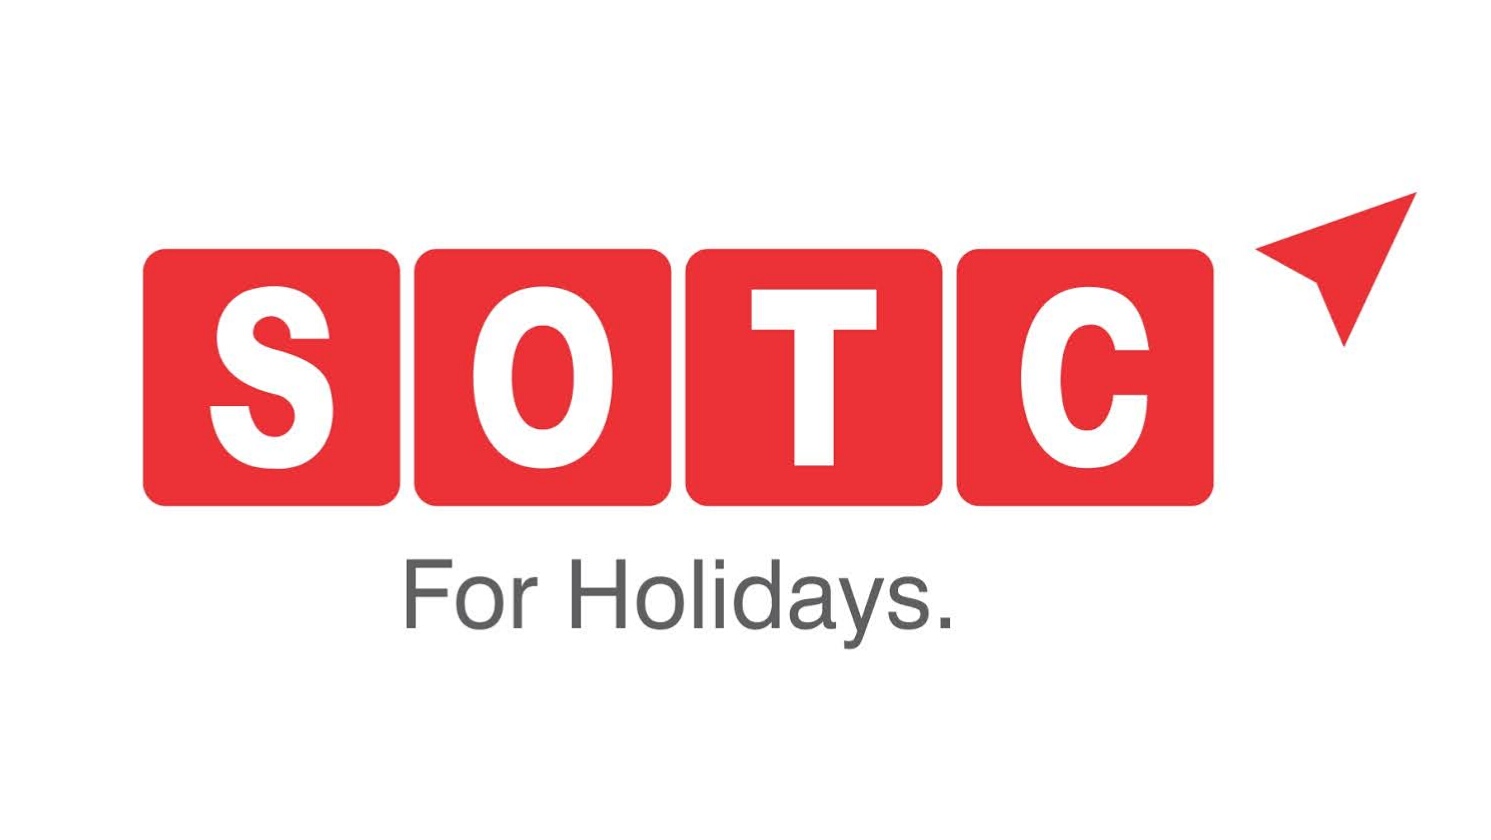 SOTC For Holidays Logo